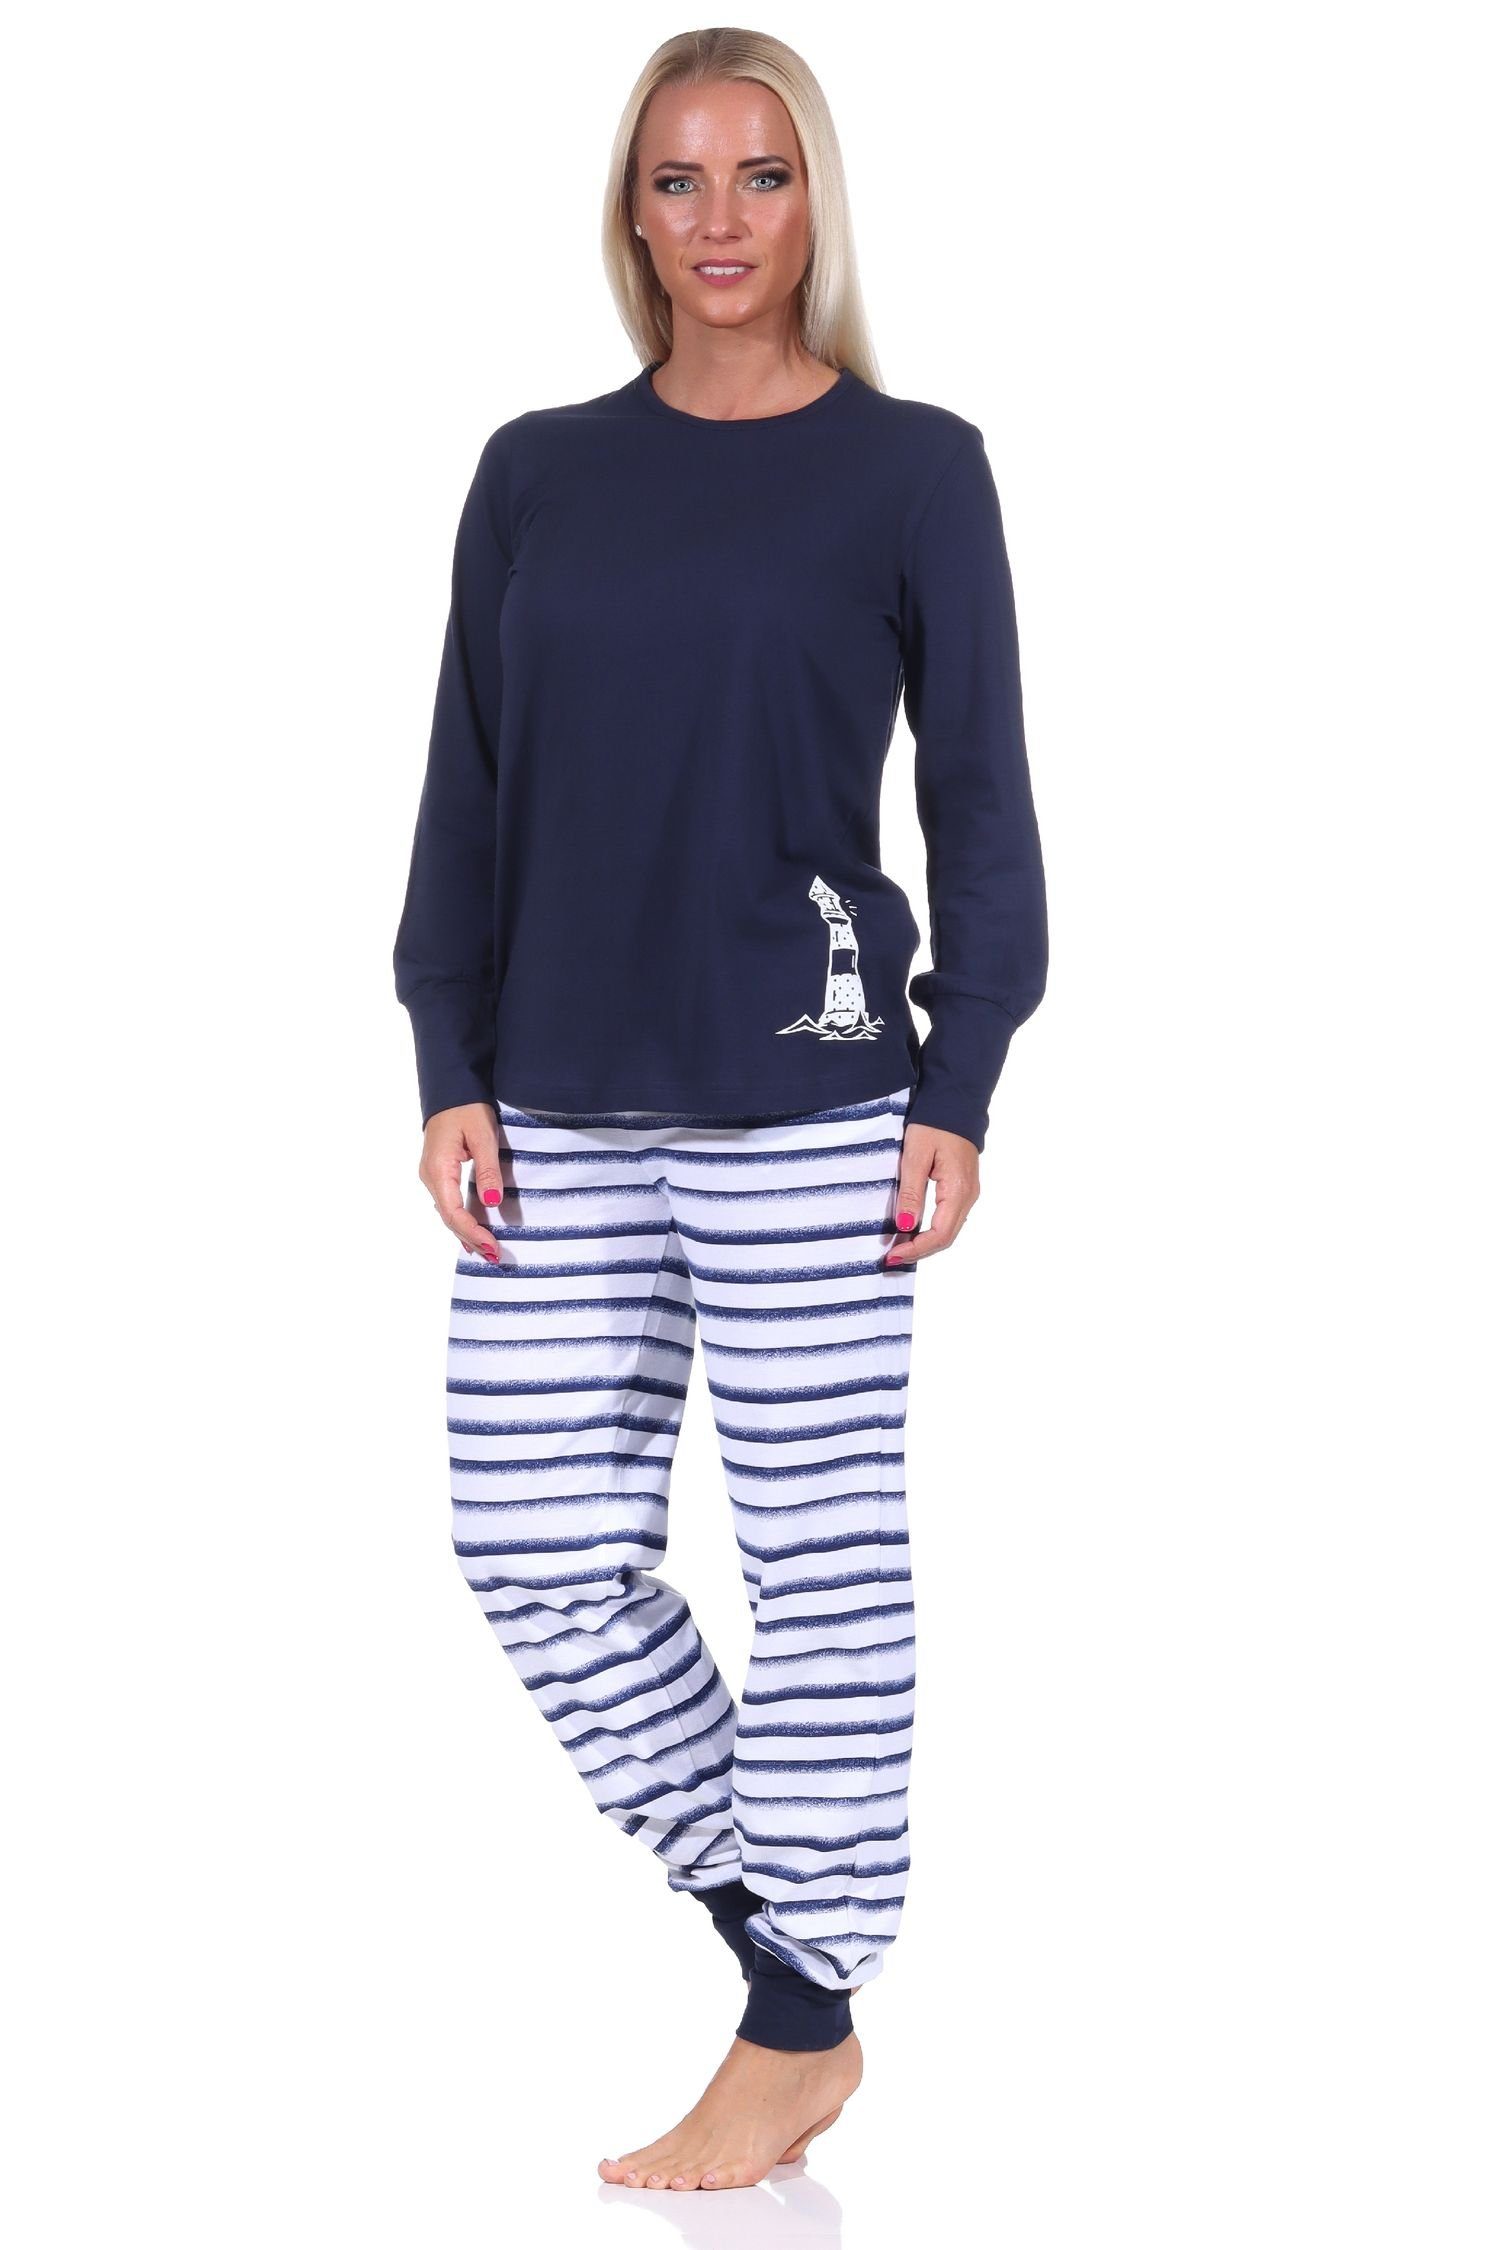 Wäsche/Bademode Pyjamas Normann Pyjama Maritimer Damen Schlafanzug mit Bündchen, Top mit Leuchturm Motiv, auch in Übergrössen